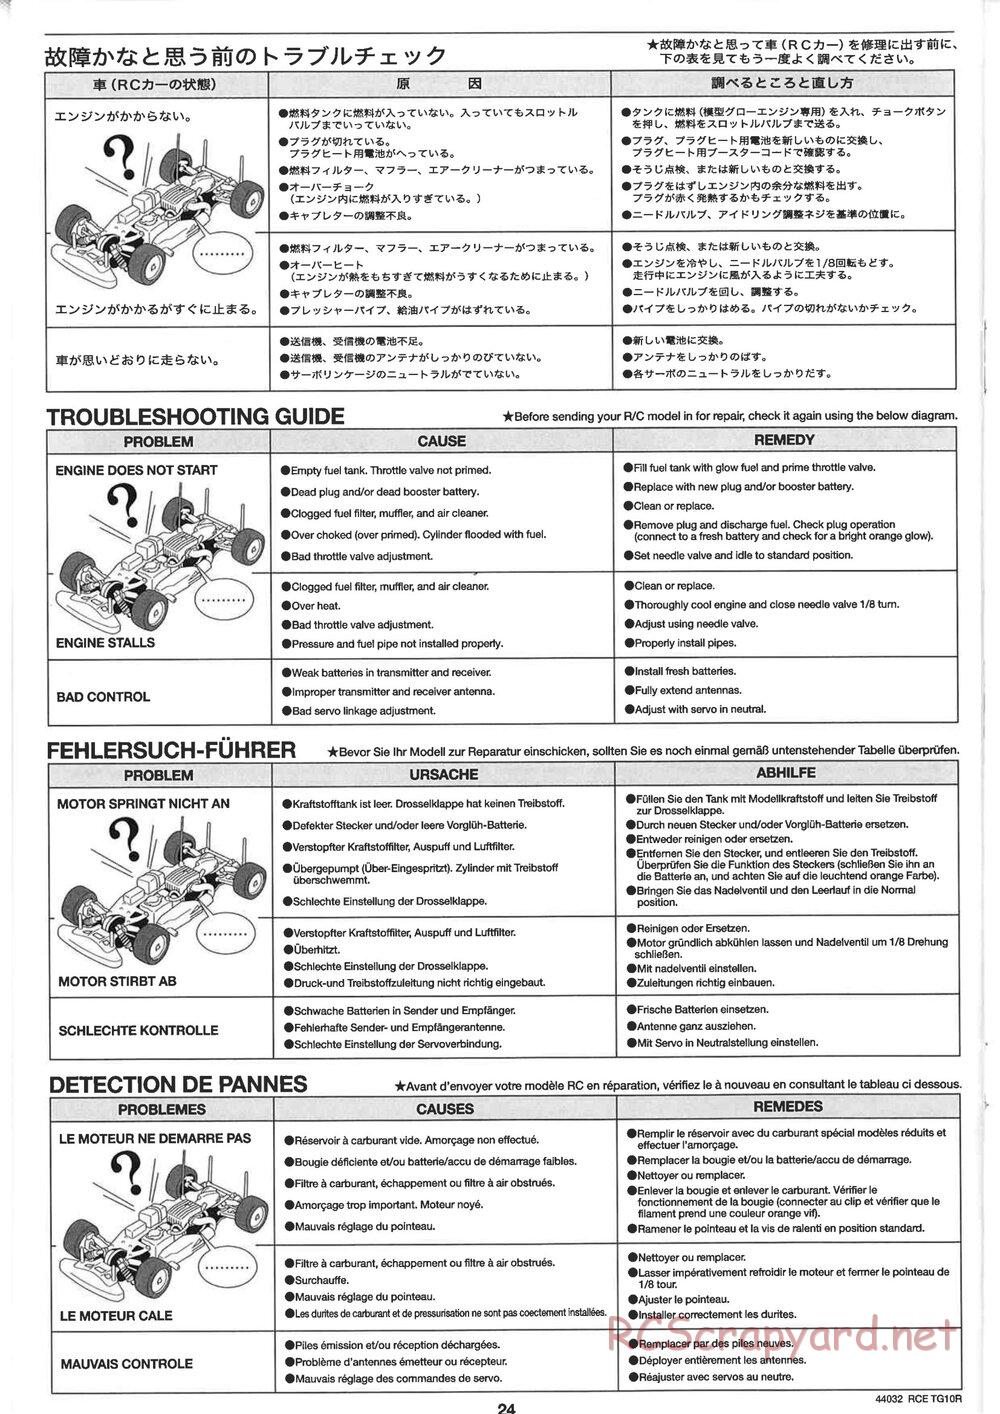 Tamiya - TG10R Chassis - Manual - Page 24